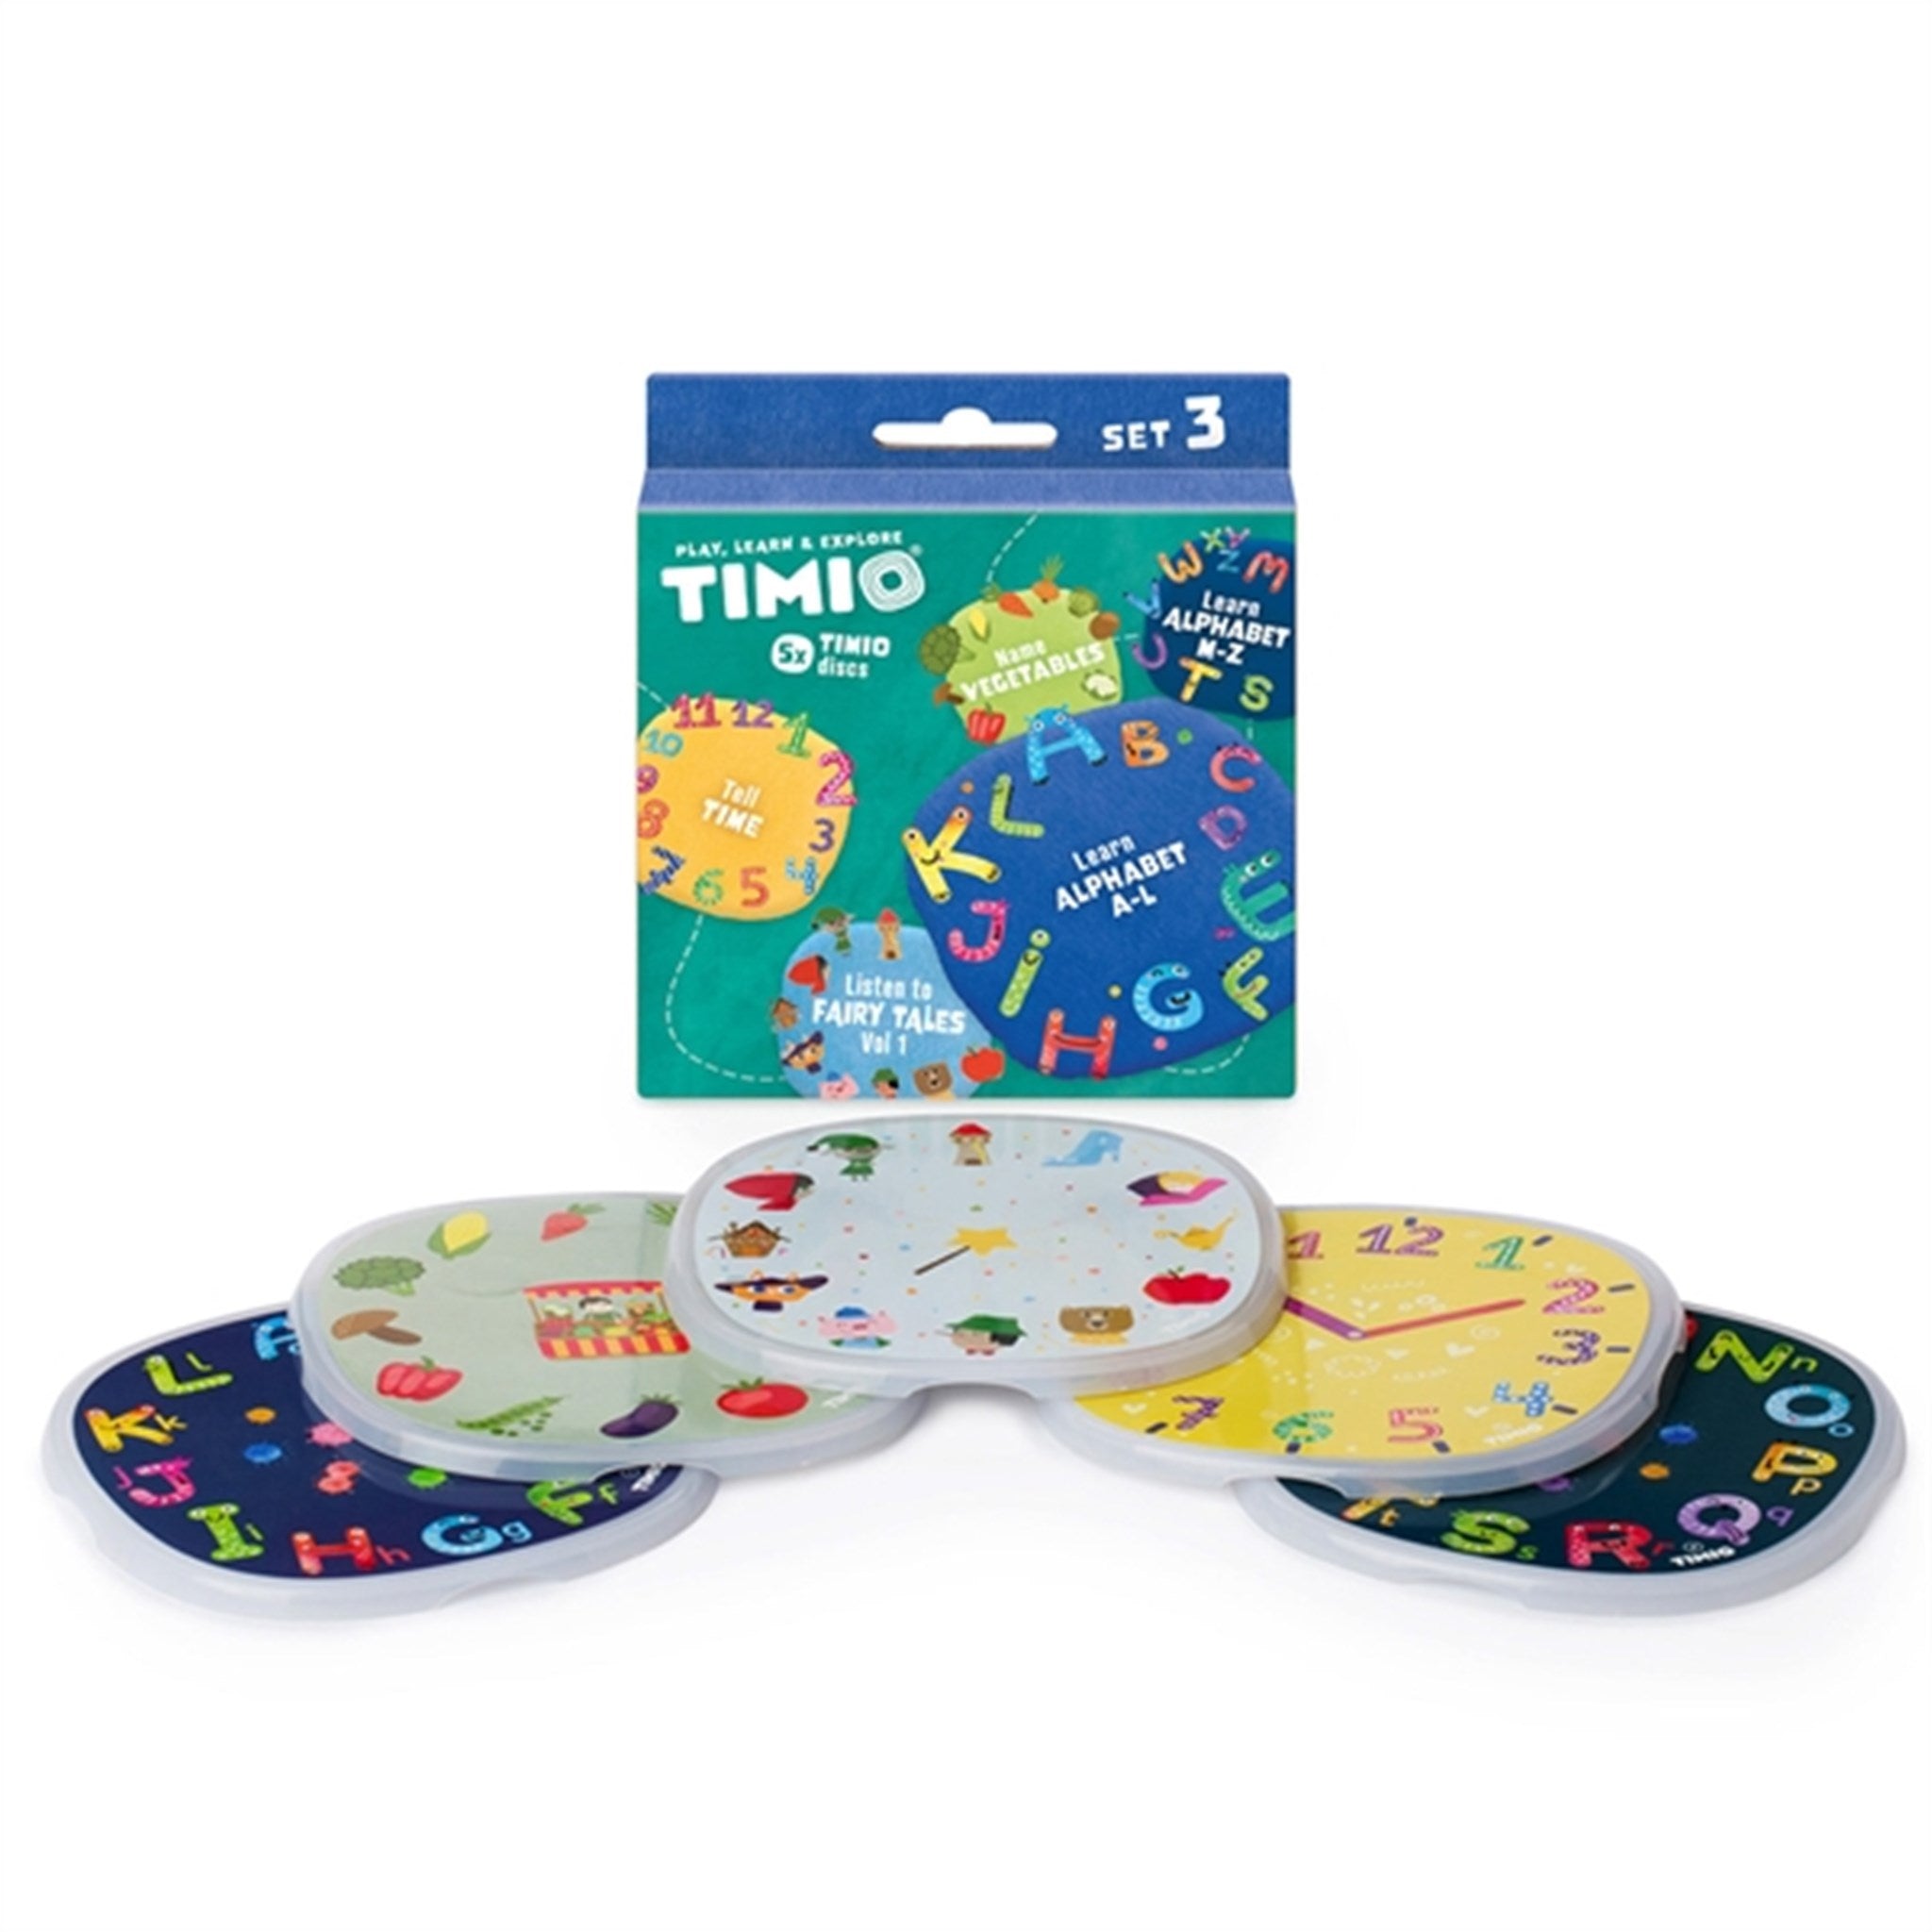 TIMIO® Disc Sæt 3 - Eventyr, Tiden, Grøntsager, Alfabet A-L og Alfabet M-Z